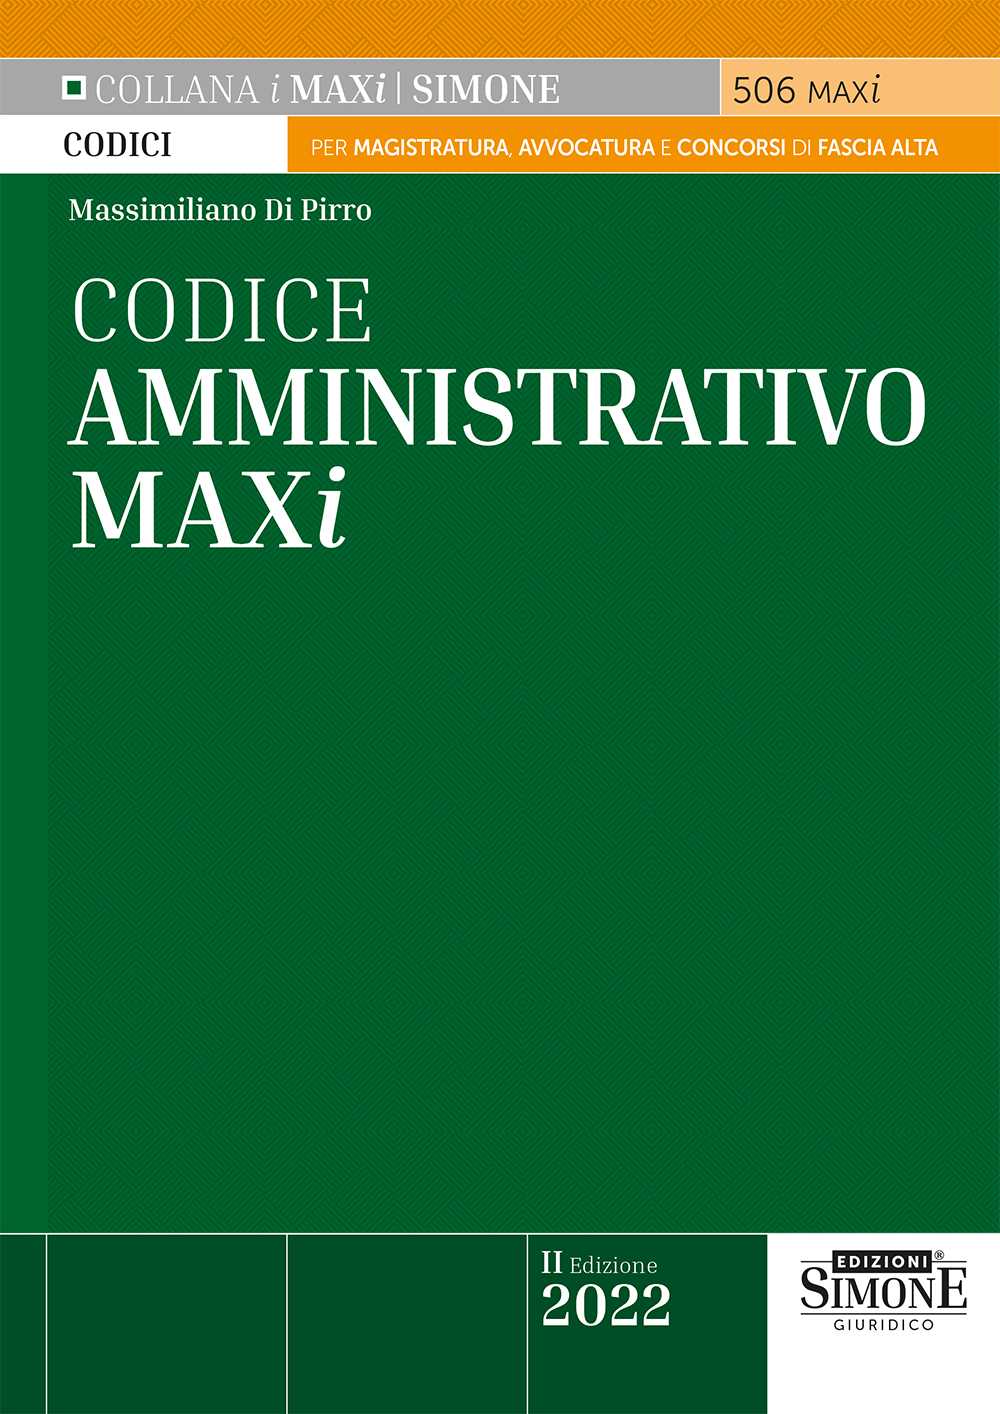 Codice Amministrativo per magistratura